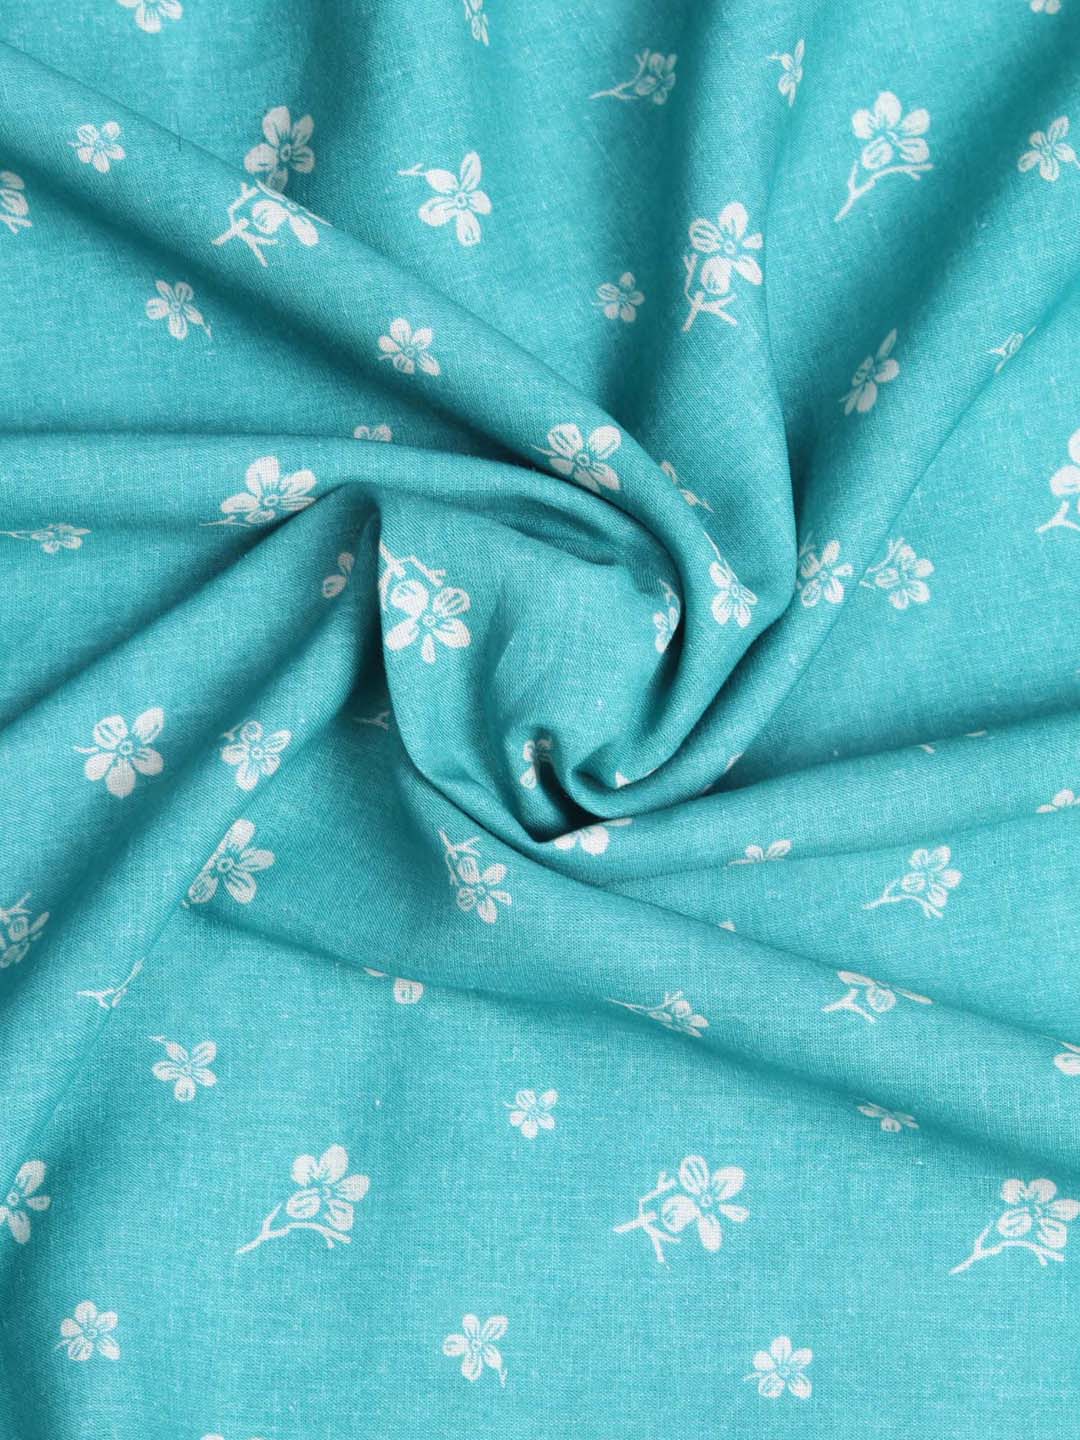 Blue Floral Cotton Linen